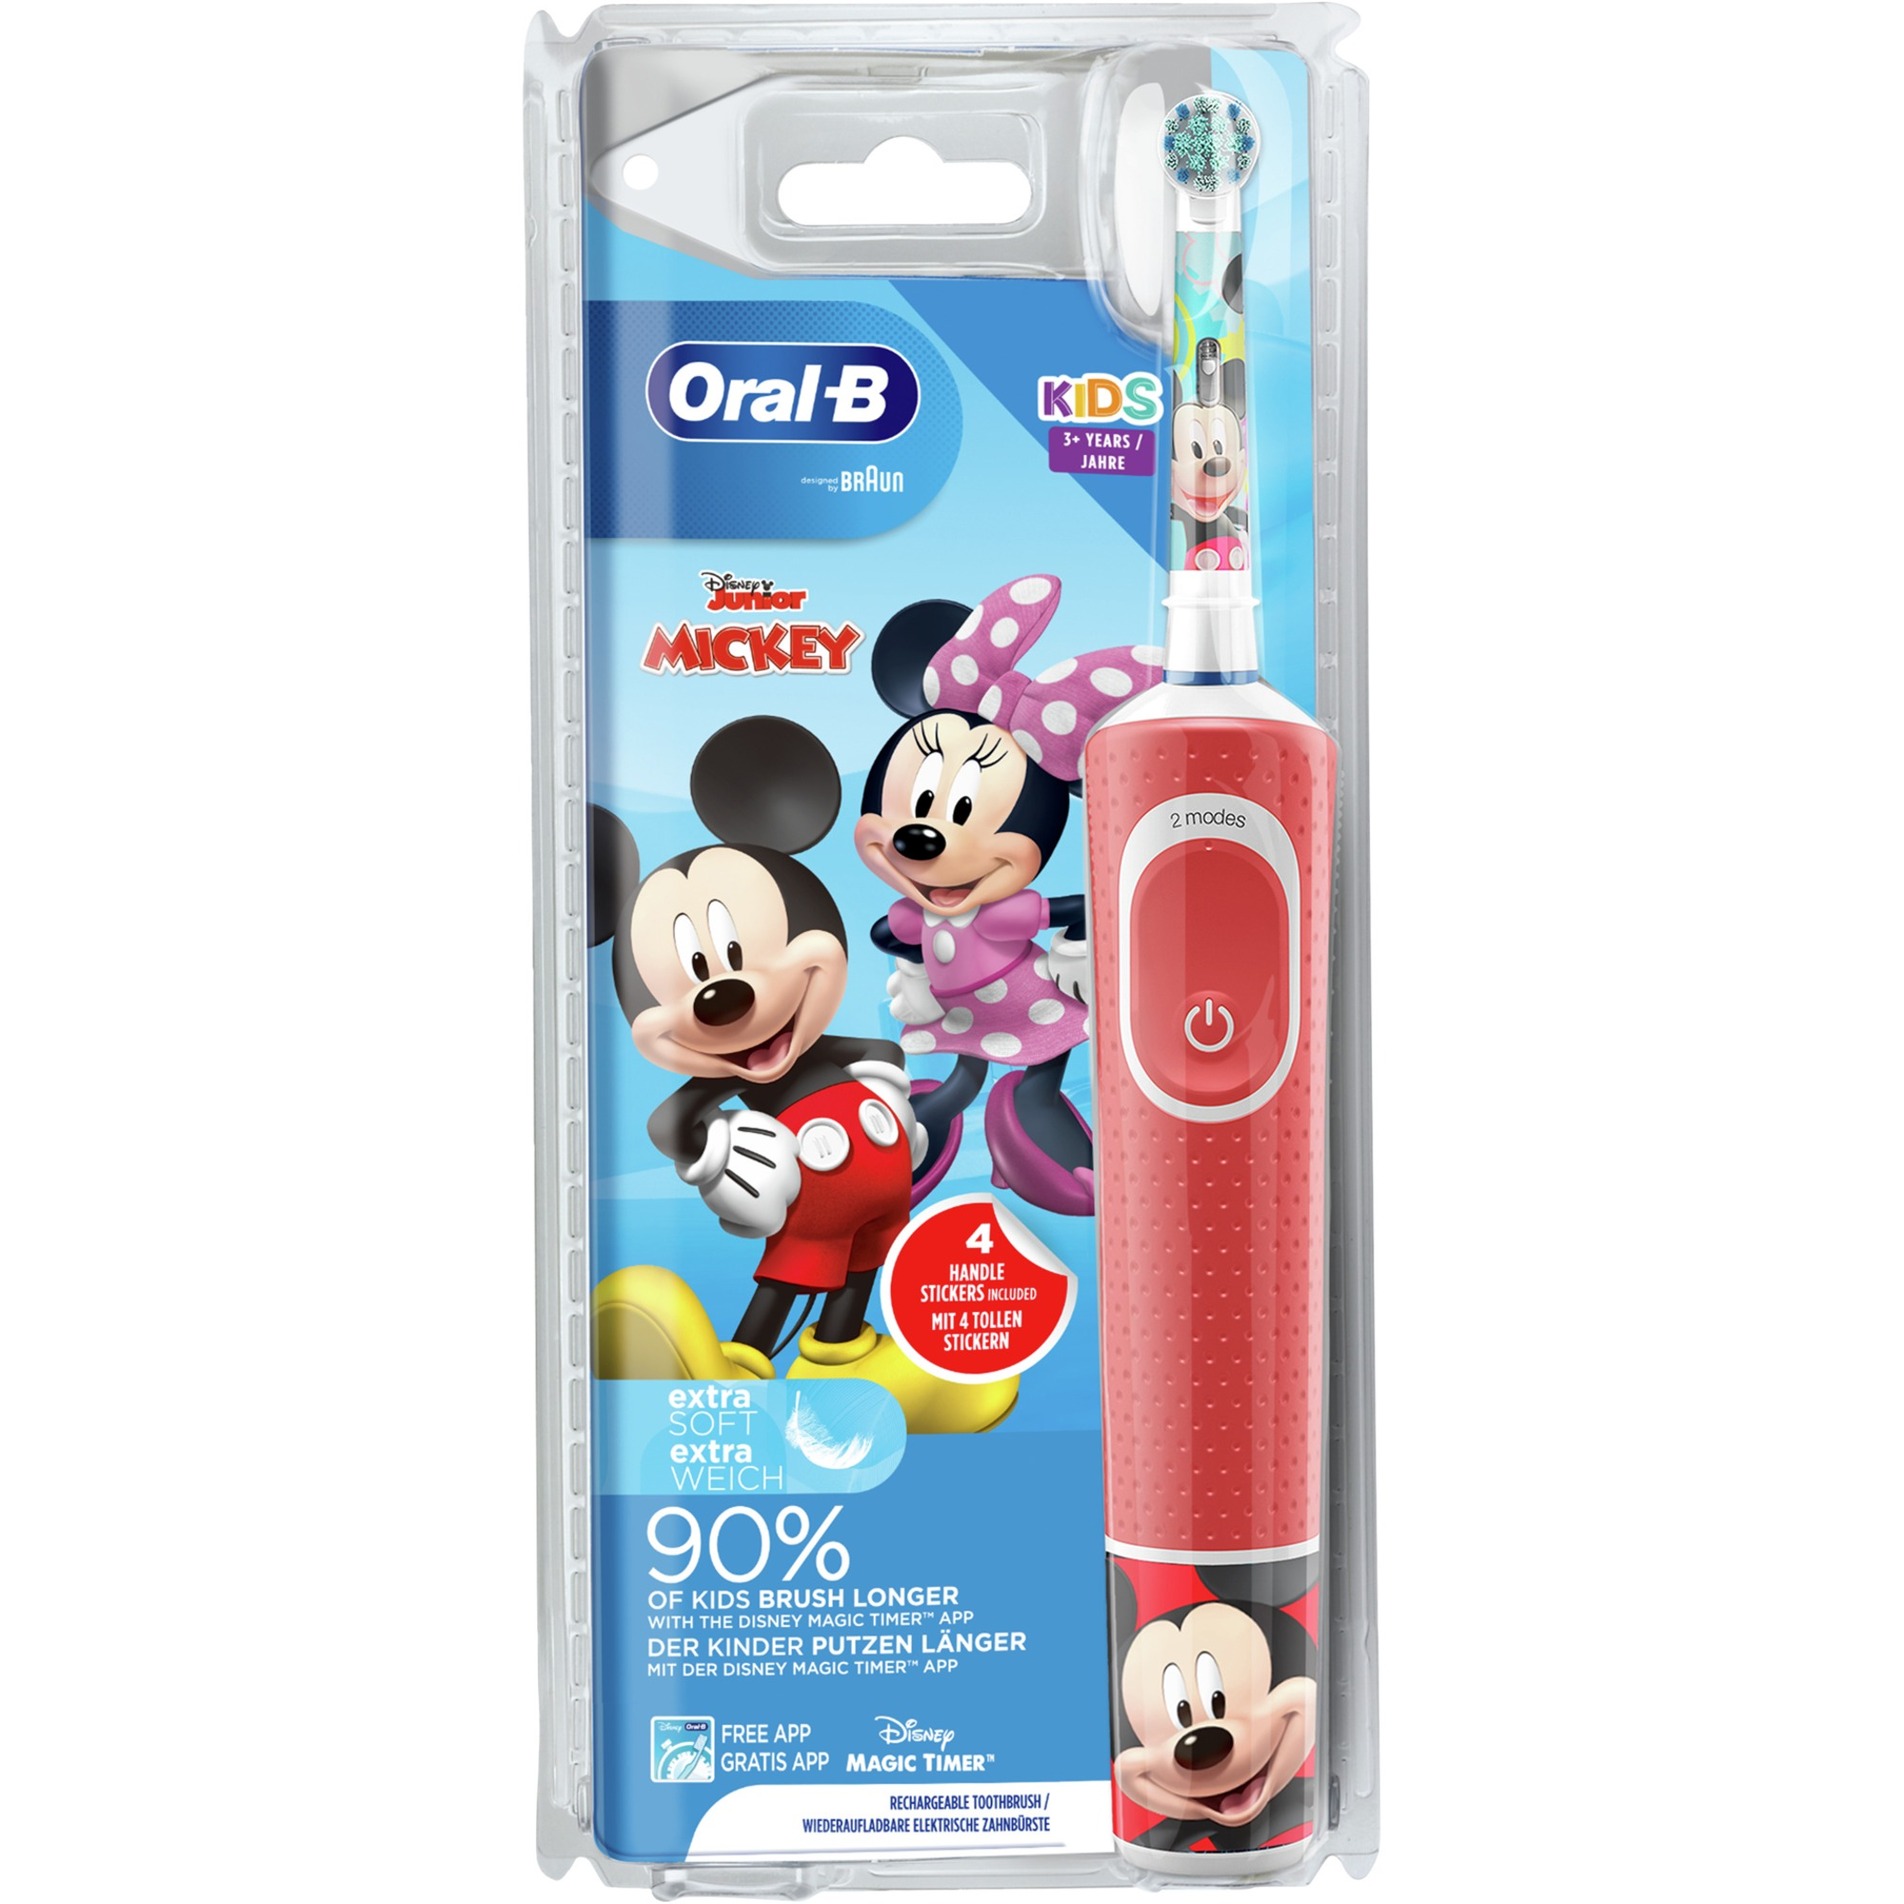 Image of Alternate - Oral-B Vitality 100 Kids Mickey, Elektrische Zahnbürste online einkaufen bei Alternate